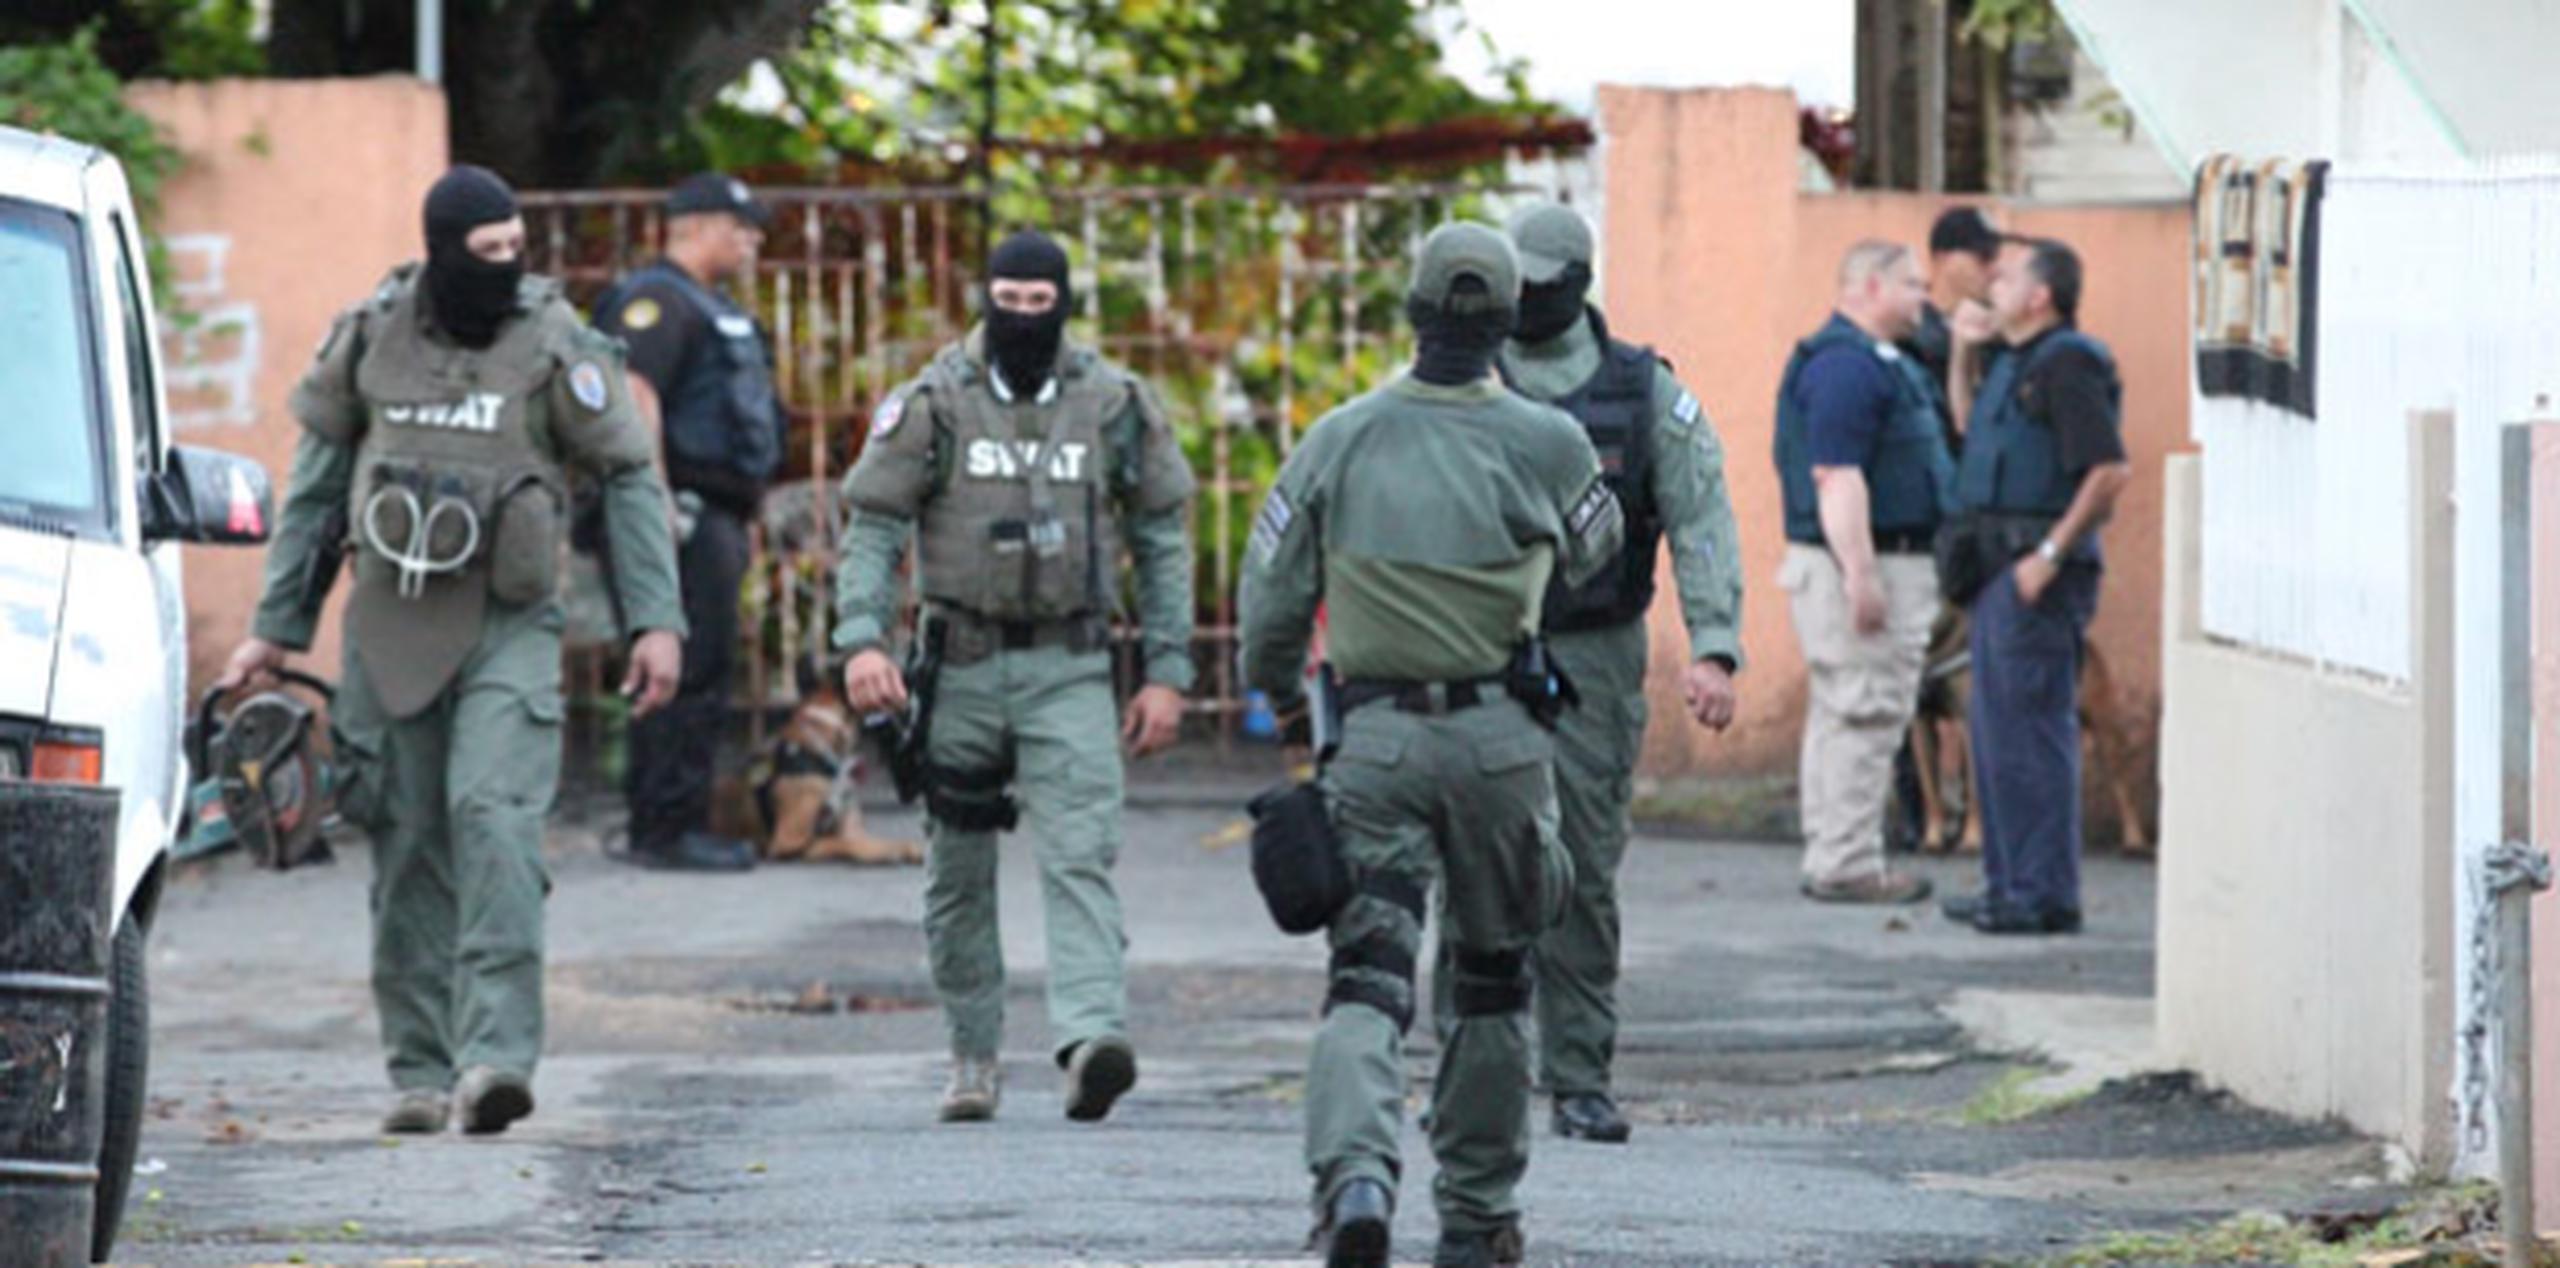 Se cree que estos crímenes están relacionados a una guerra por el control de los puntos de drogas en San Juan y Guaynabo. (alex.figueroa@gfrmedia.com)